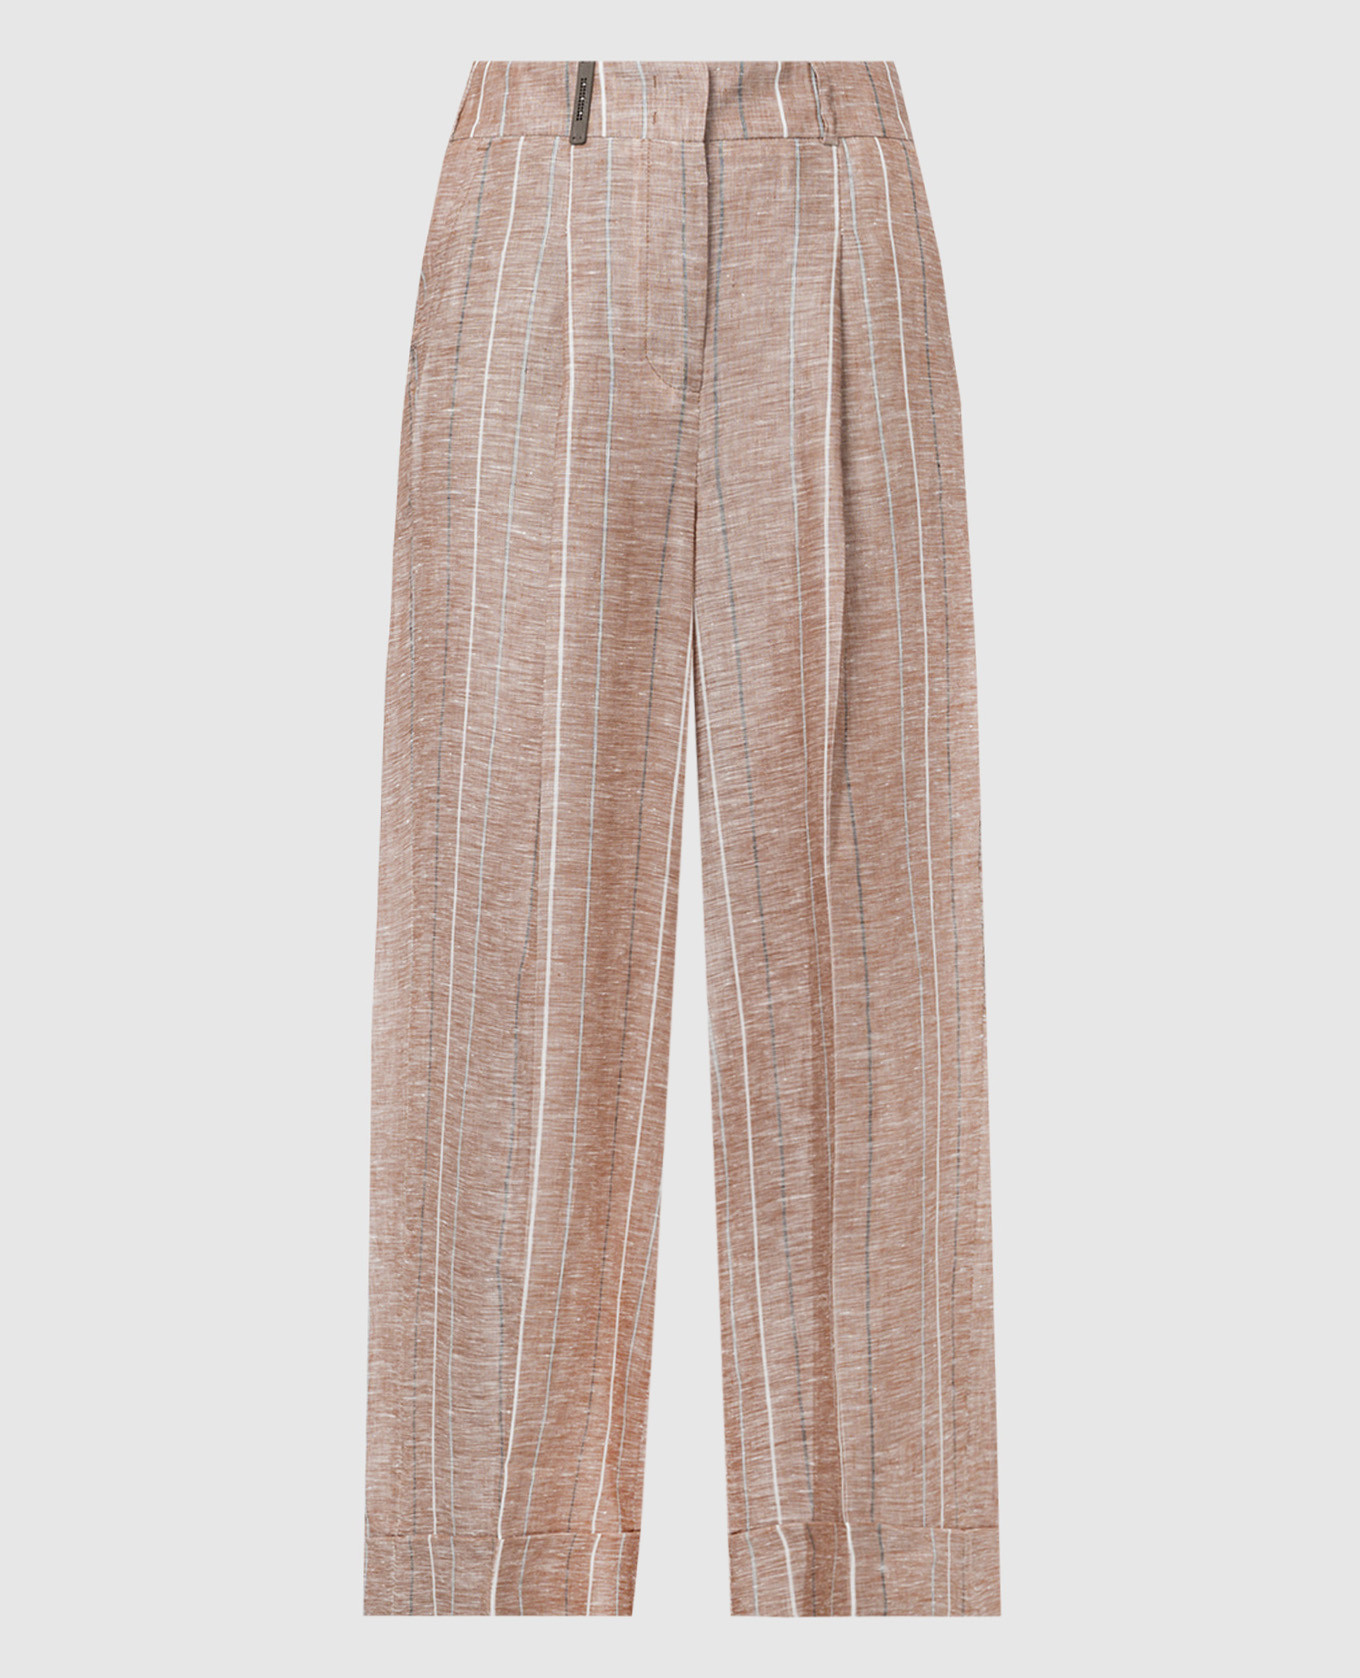 Brown striped linen pants